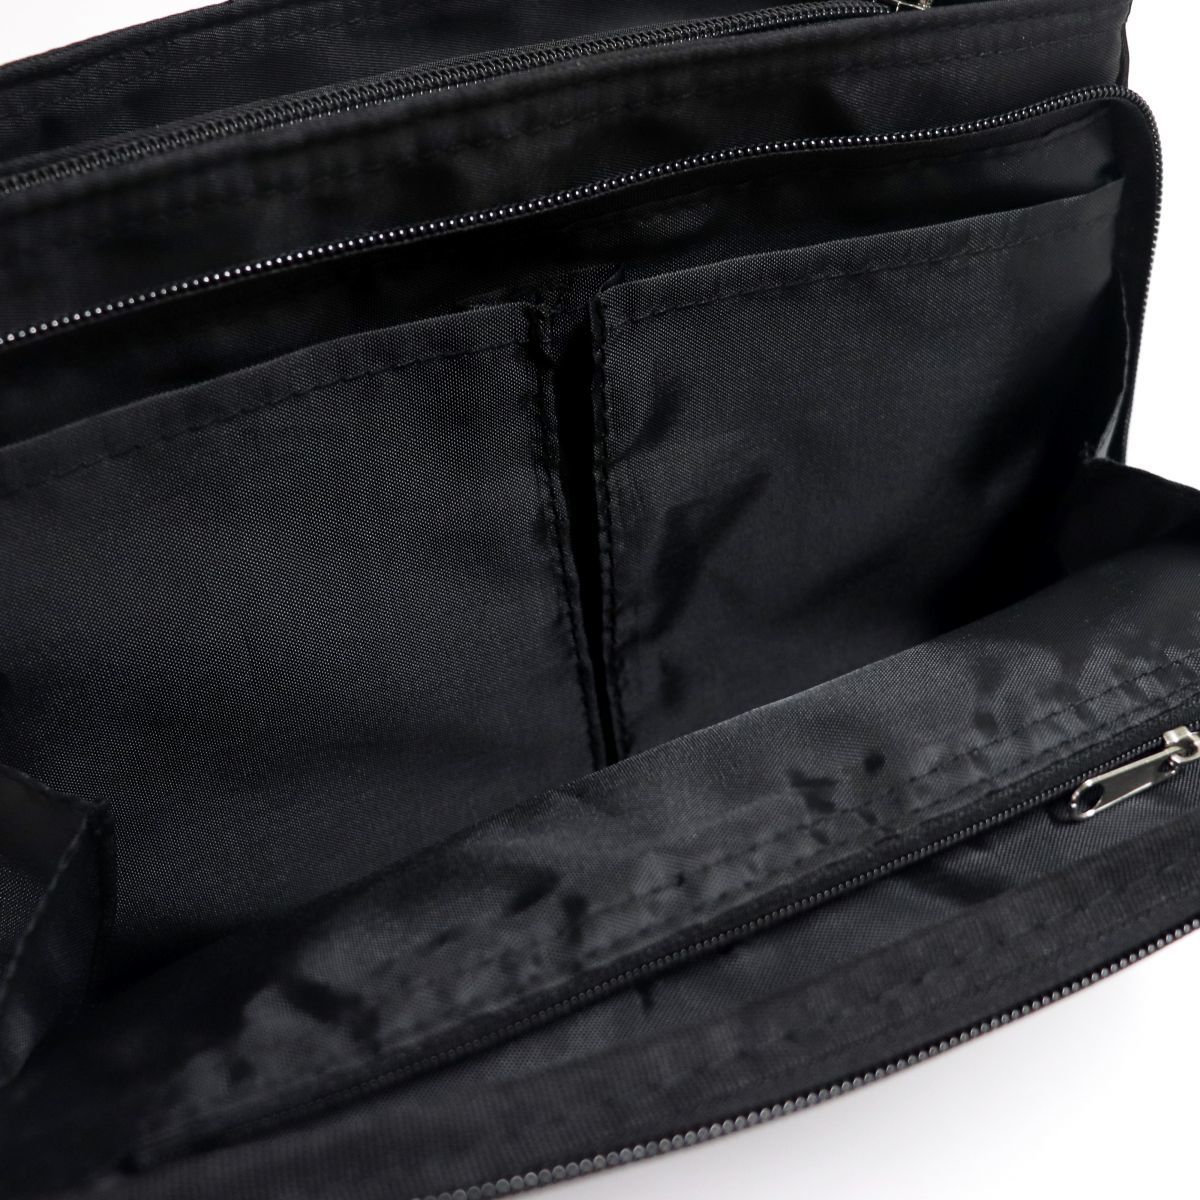 * Le Coq le coq sportif новый товар карман много место хранения сила сумка на плечо сумка сумка BAG чёрный [36594-001] один шесть *QWER*